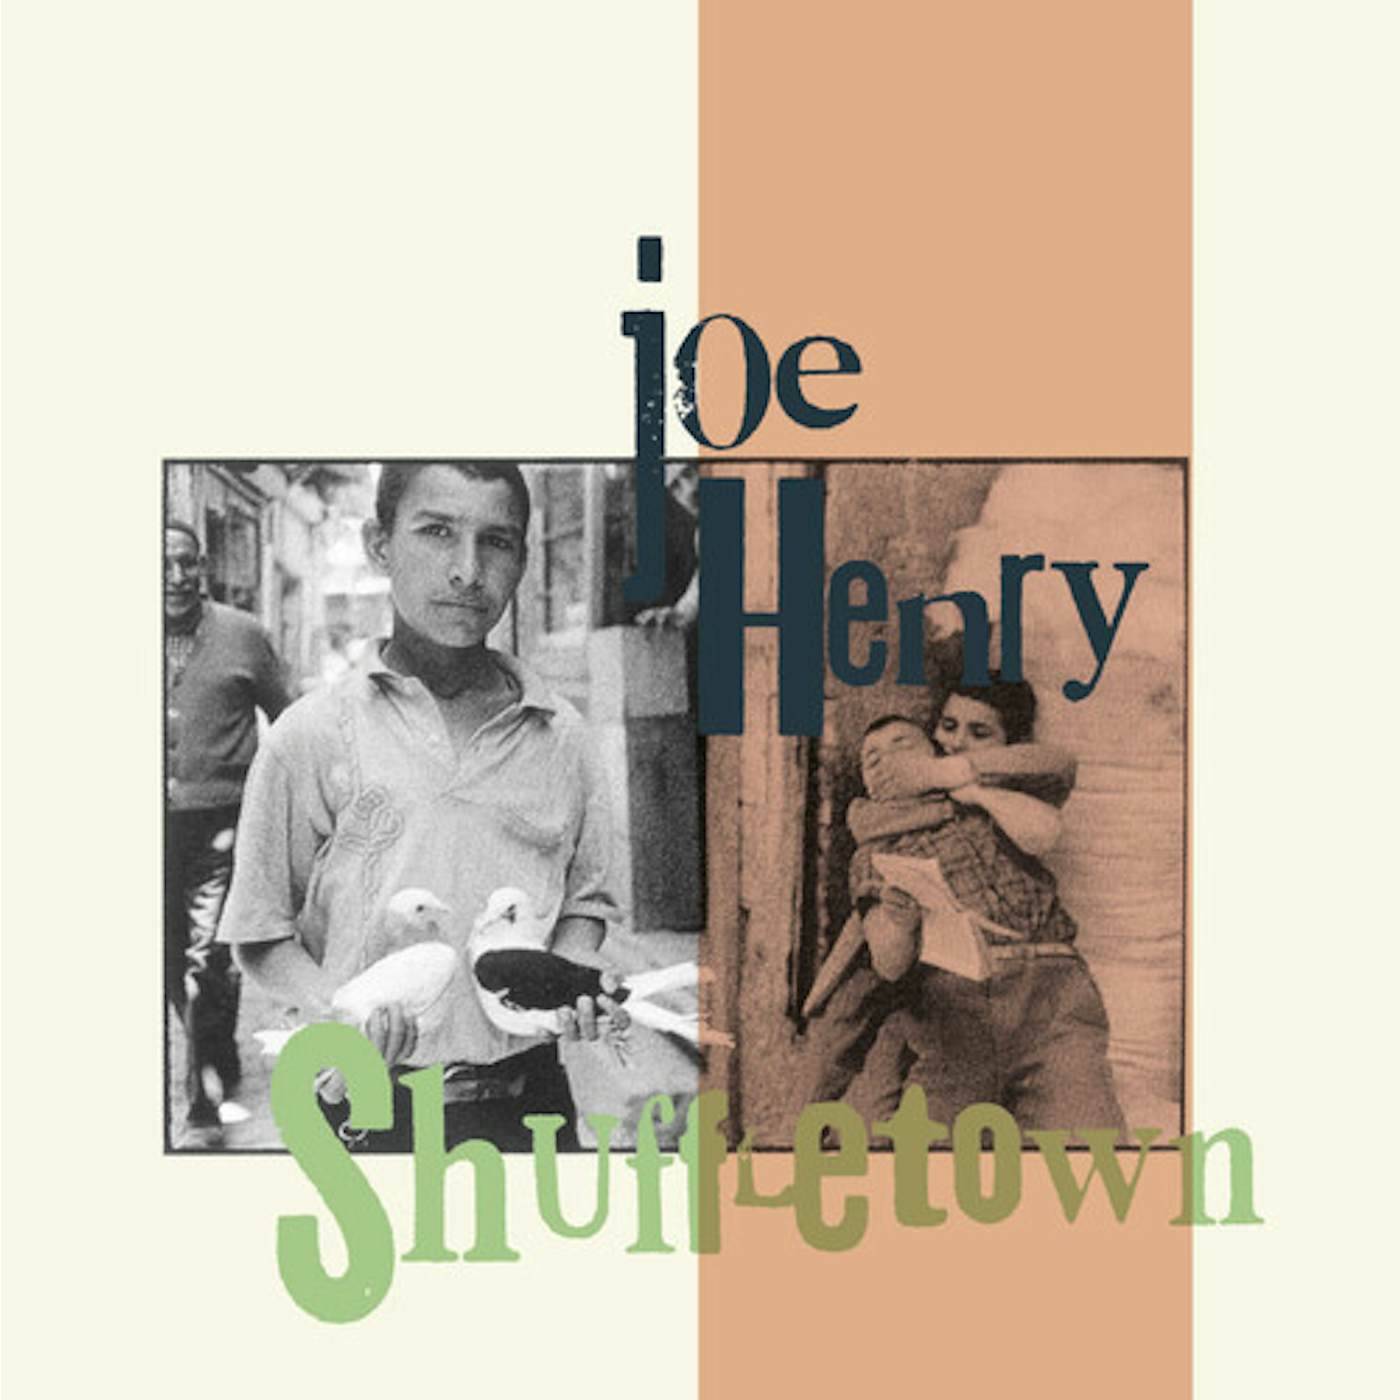 Joe Henry SHUFFLETOWN CD